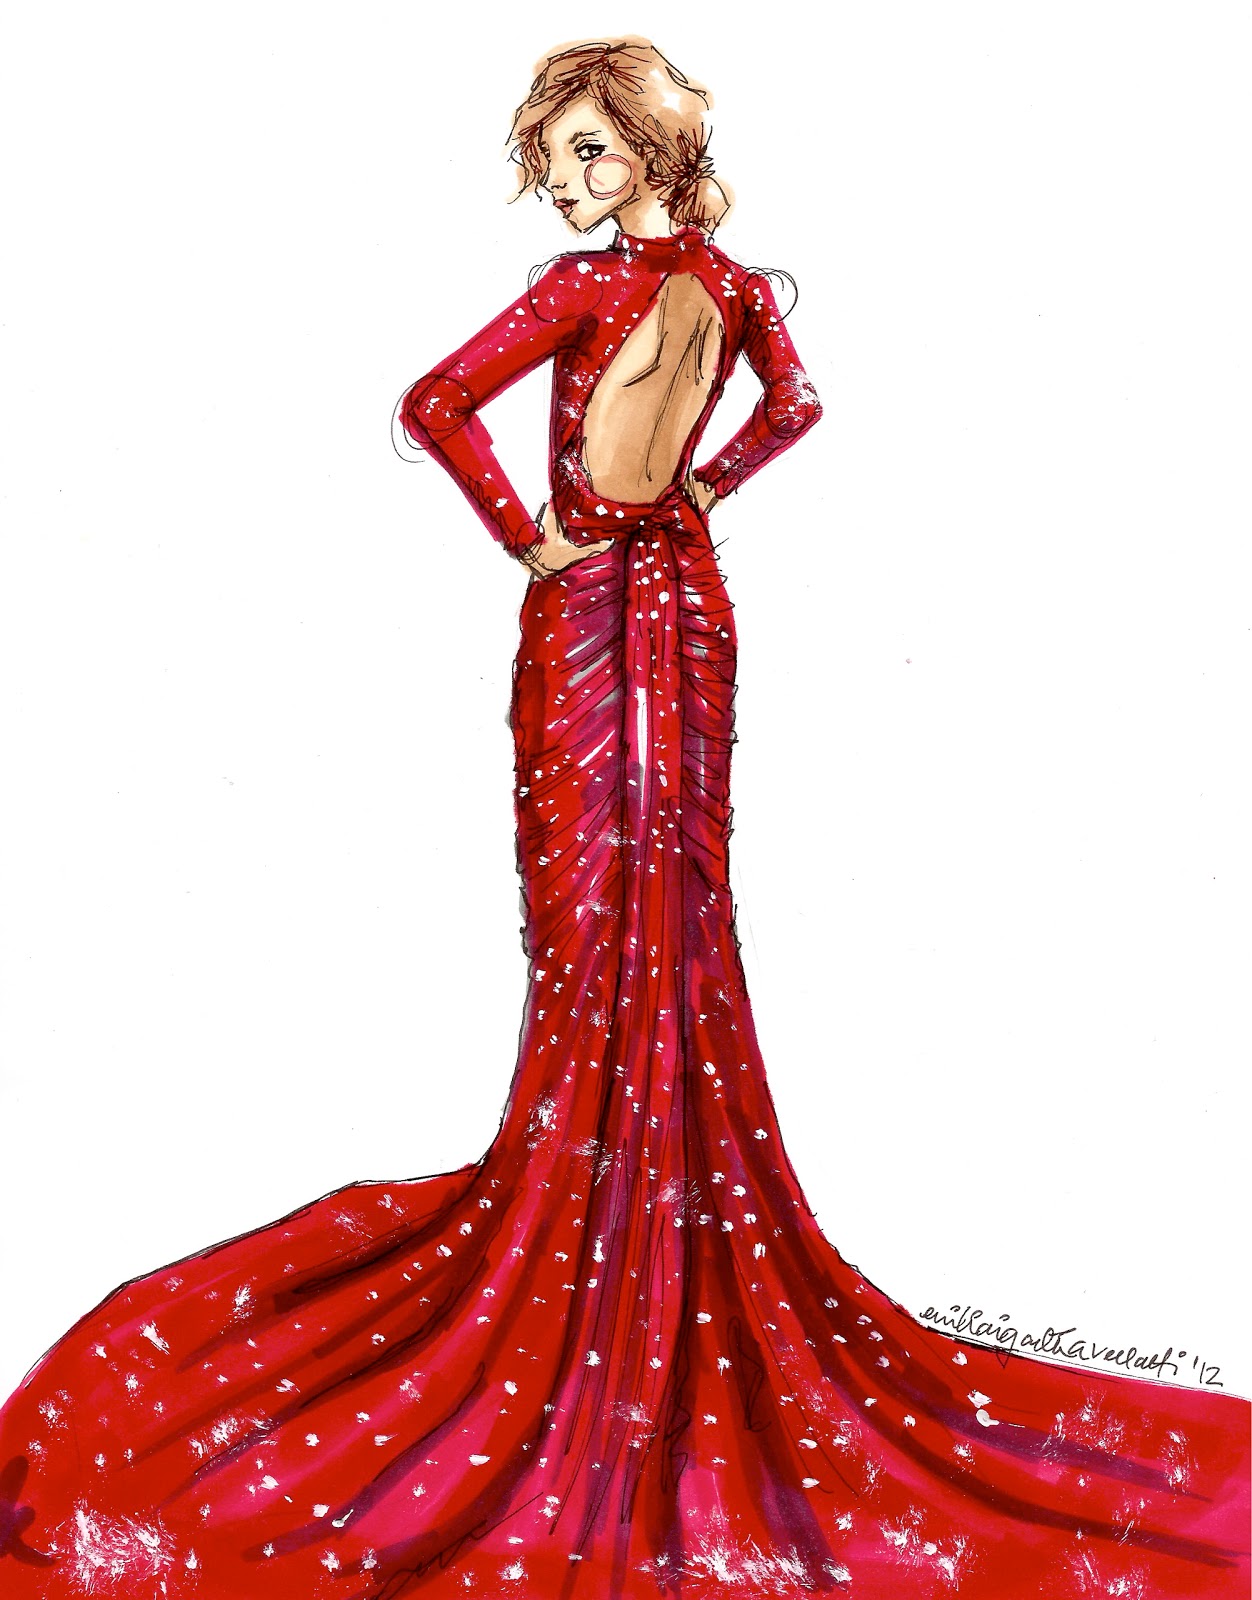 sketch-à-porter: Red dress, take two.